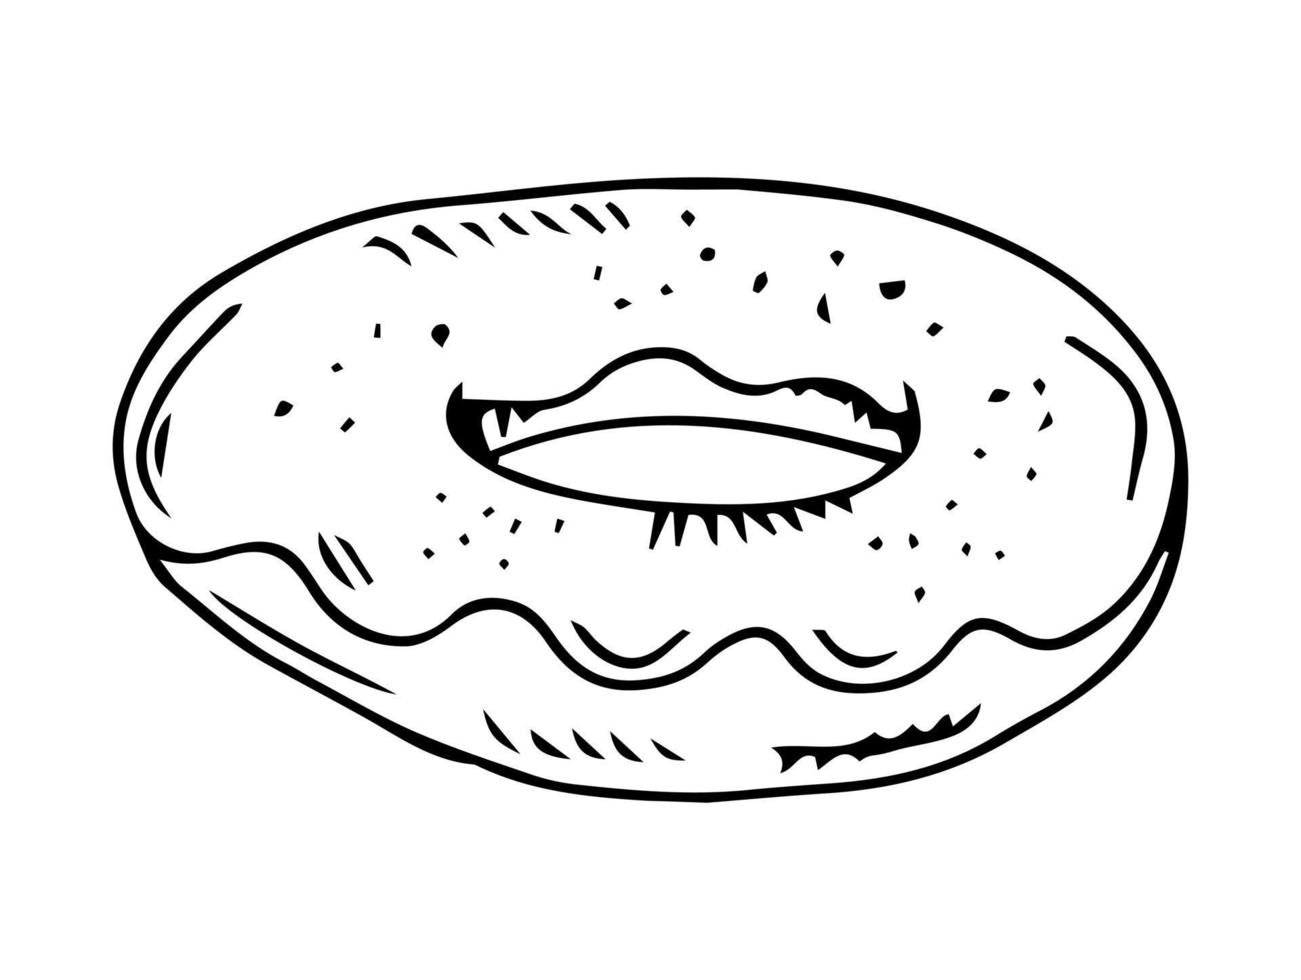 donut hand tekenen doodle stijl schets geïsoleerd op een witte achtergrond. vector voorraad illustratie.